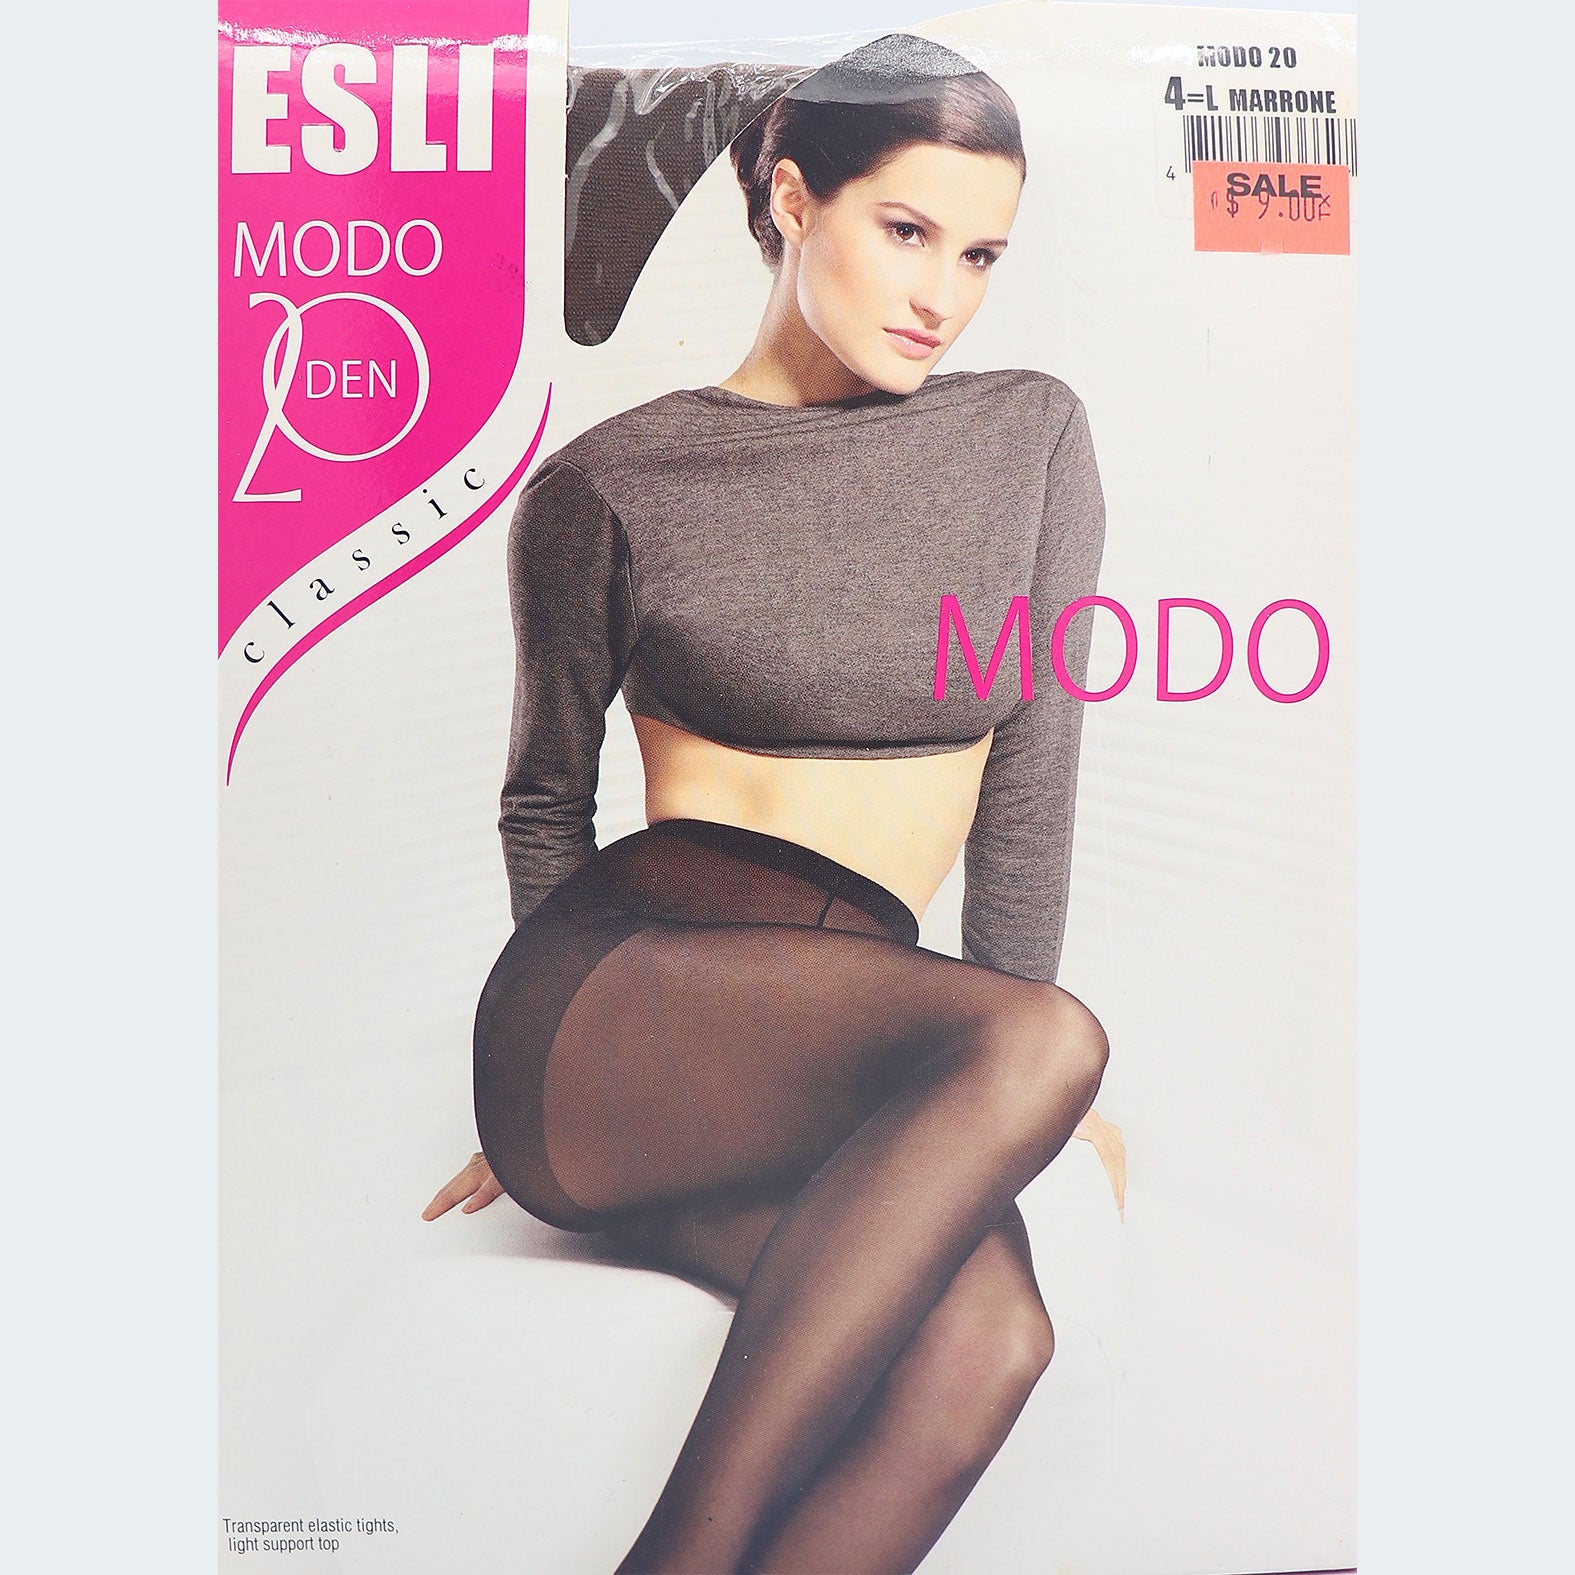 ESLI MODO Classic 20 Den (Non-Control/Reinforced Panty – PhantomOutlet